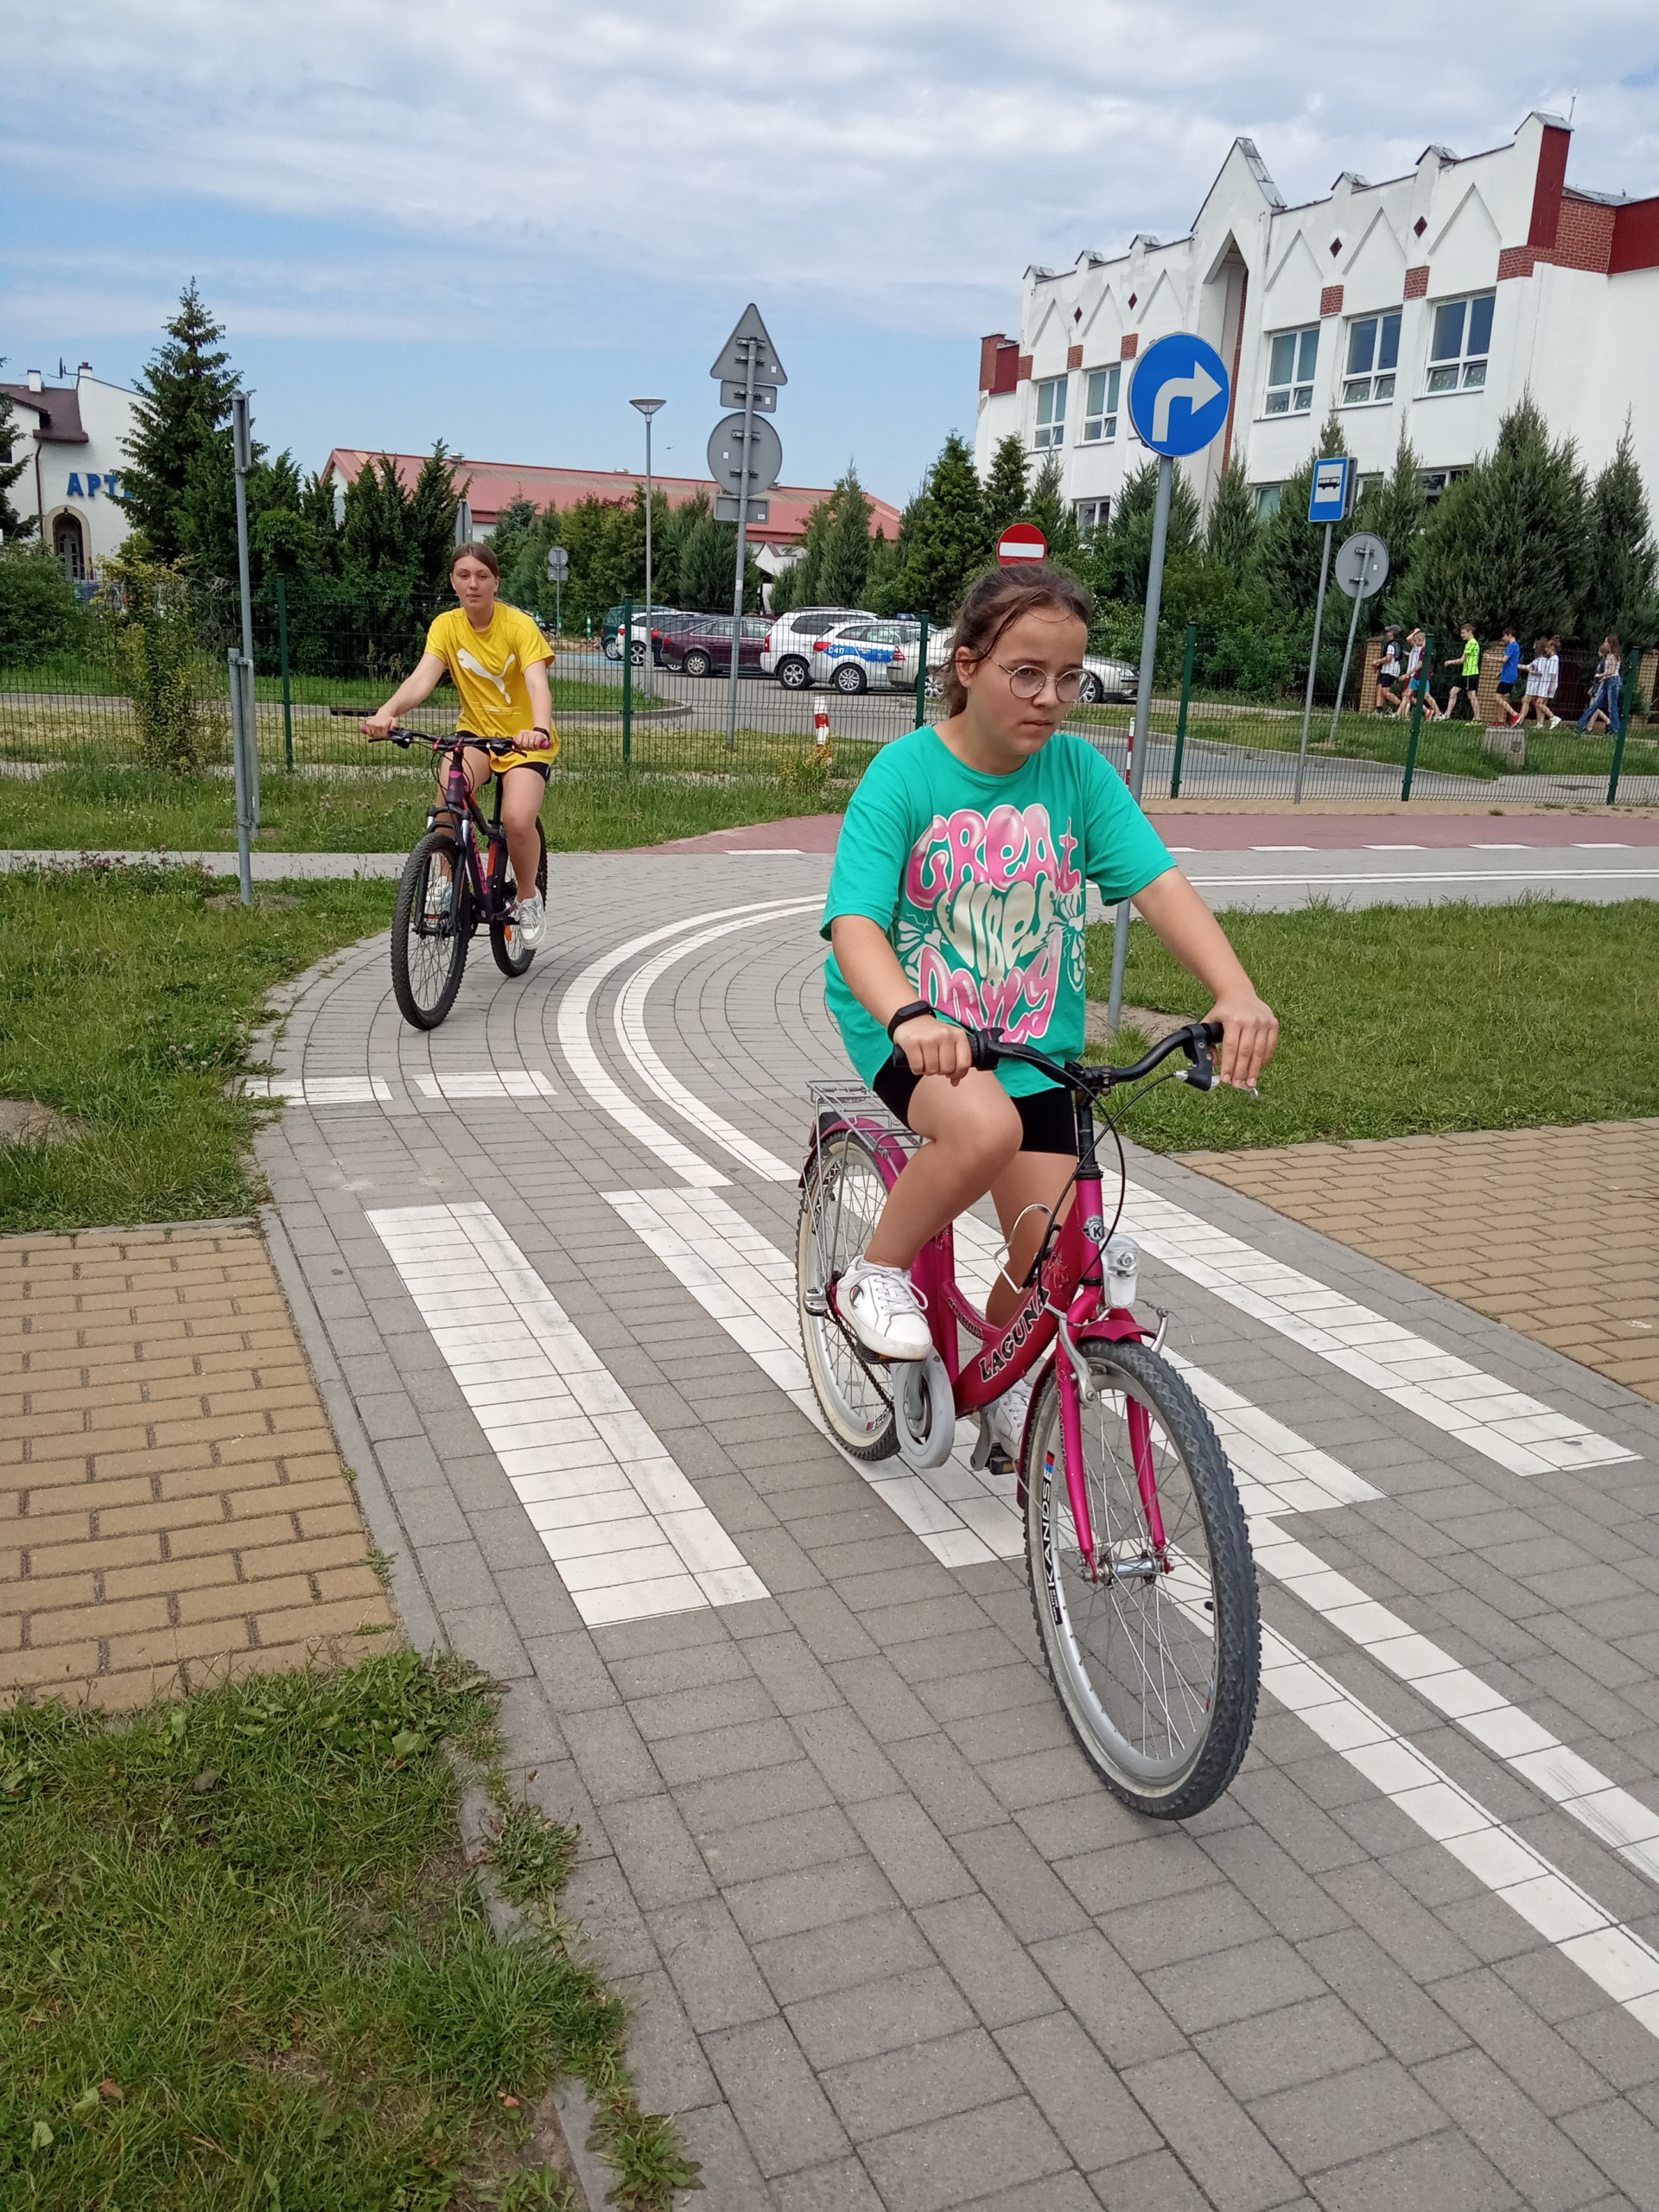 Uczennica jedzie rowerem przez skrzyżowanie, za nią jedzie kolejna osoba.